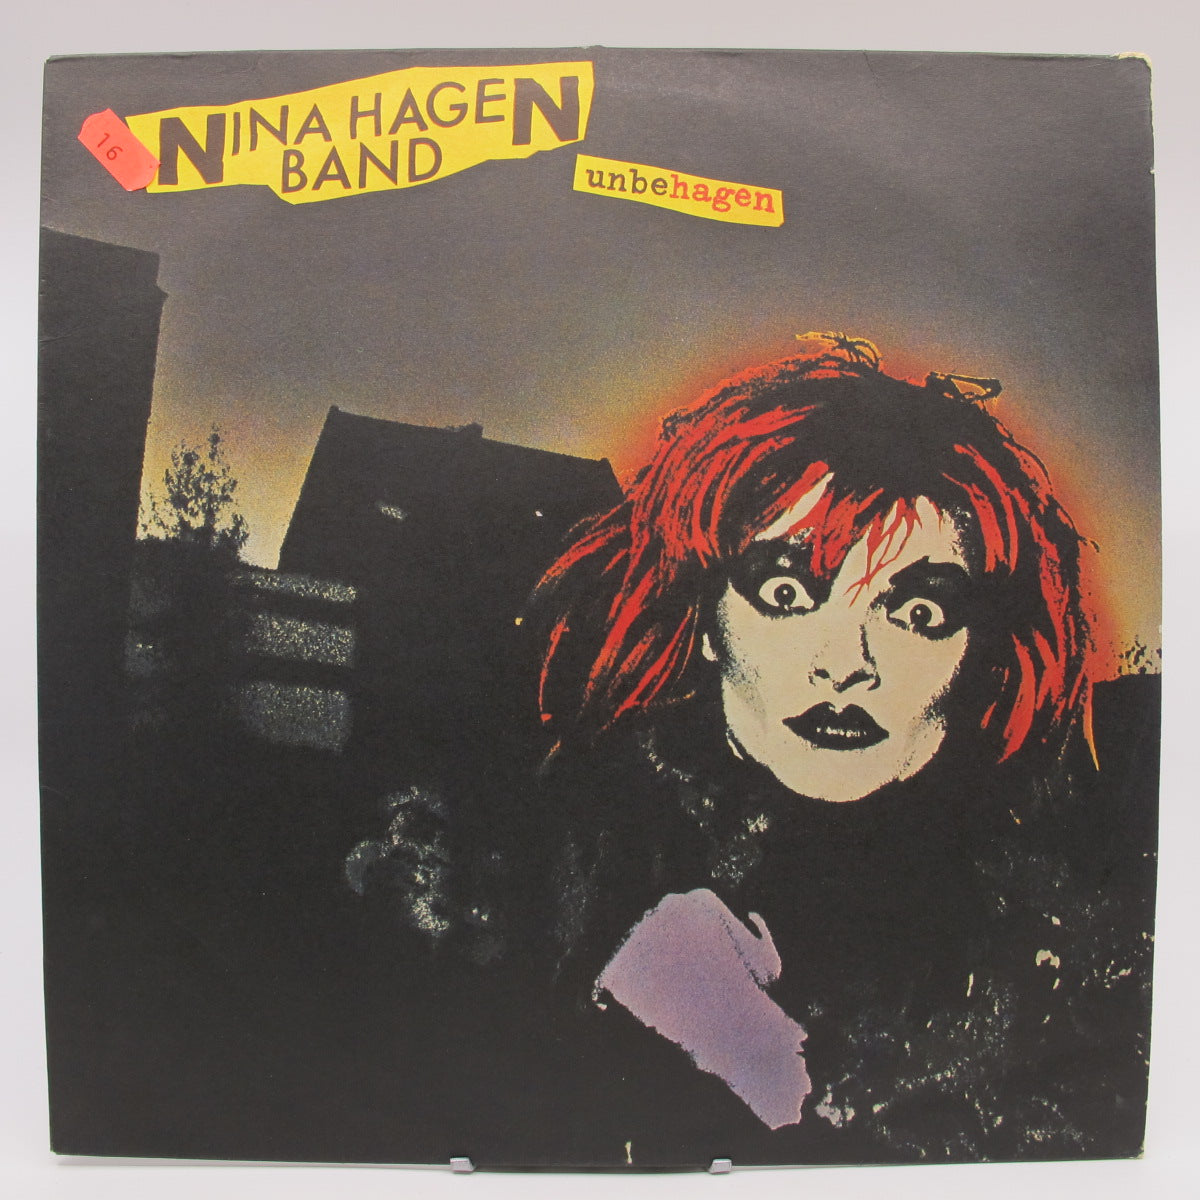 Nina Hagen Band - Unbehagen (Notuð plata VG)